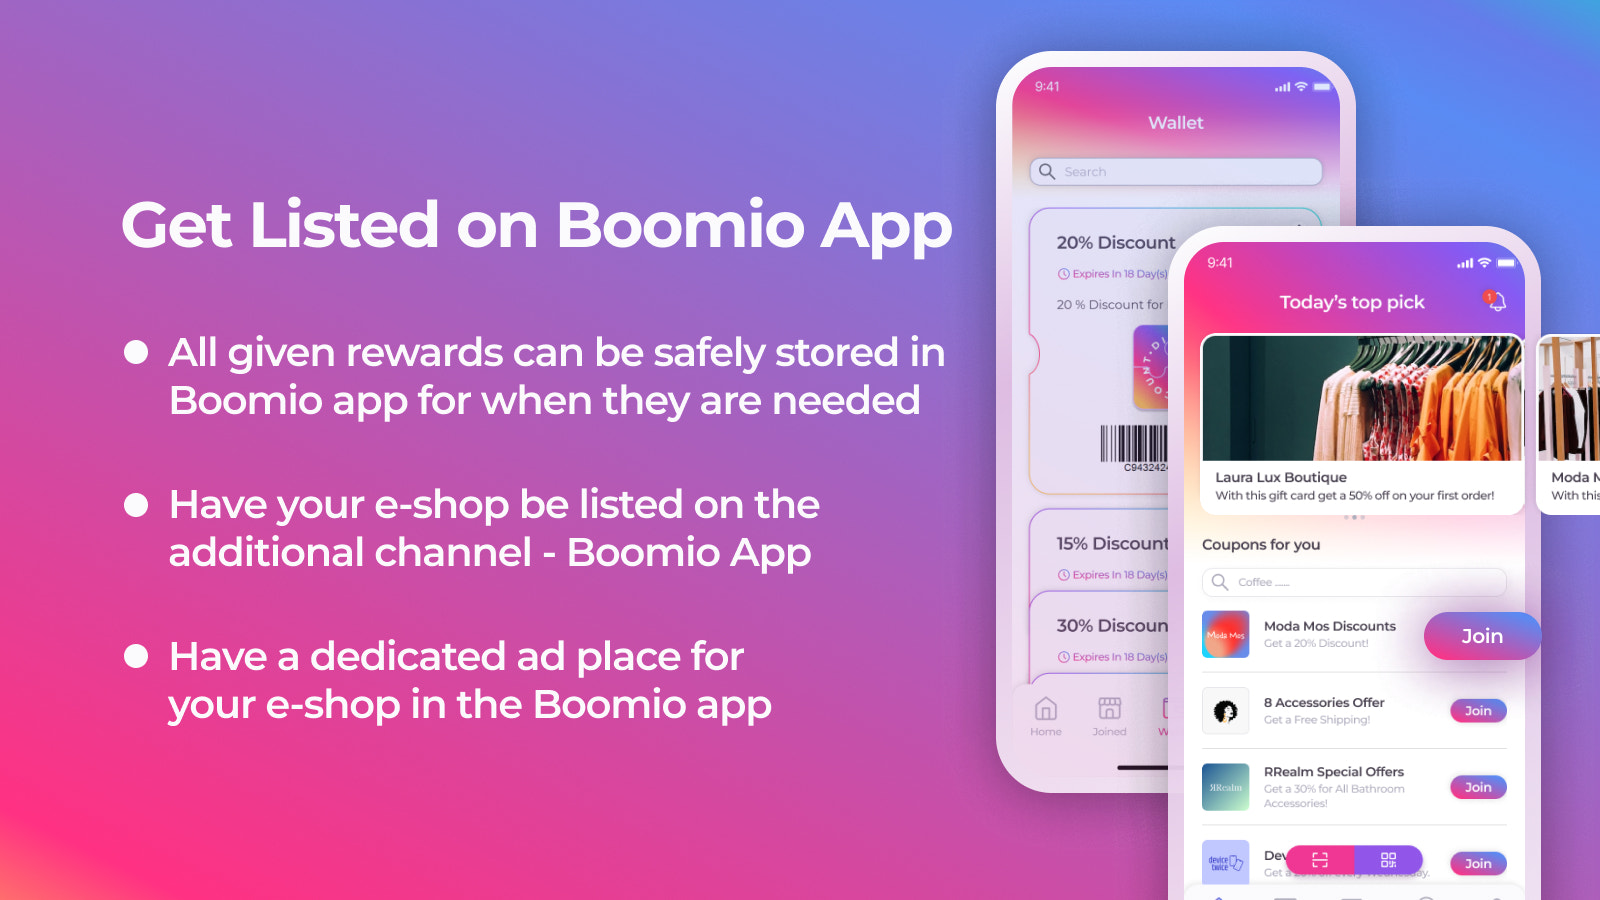 Obtenez votre e-boutique listée sur l'application Boomio.